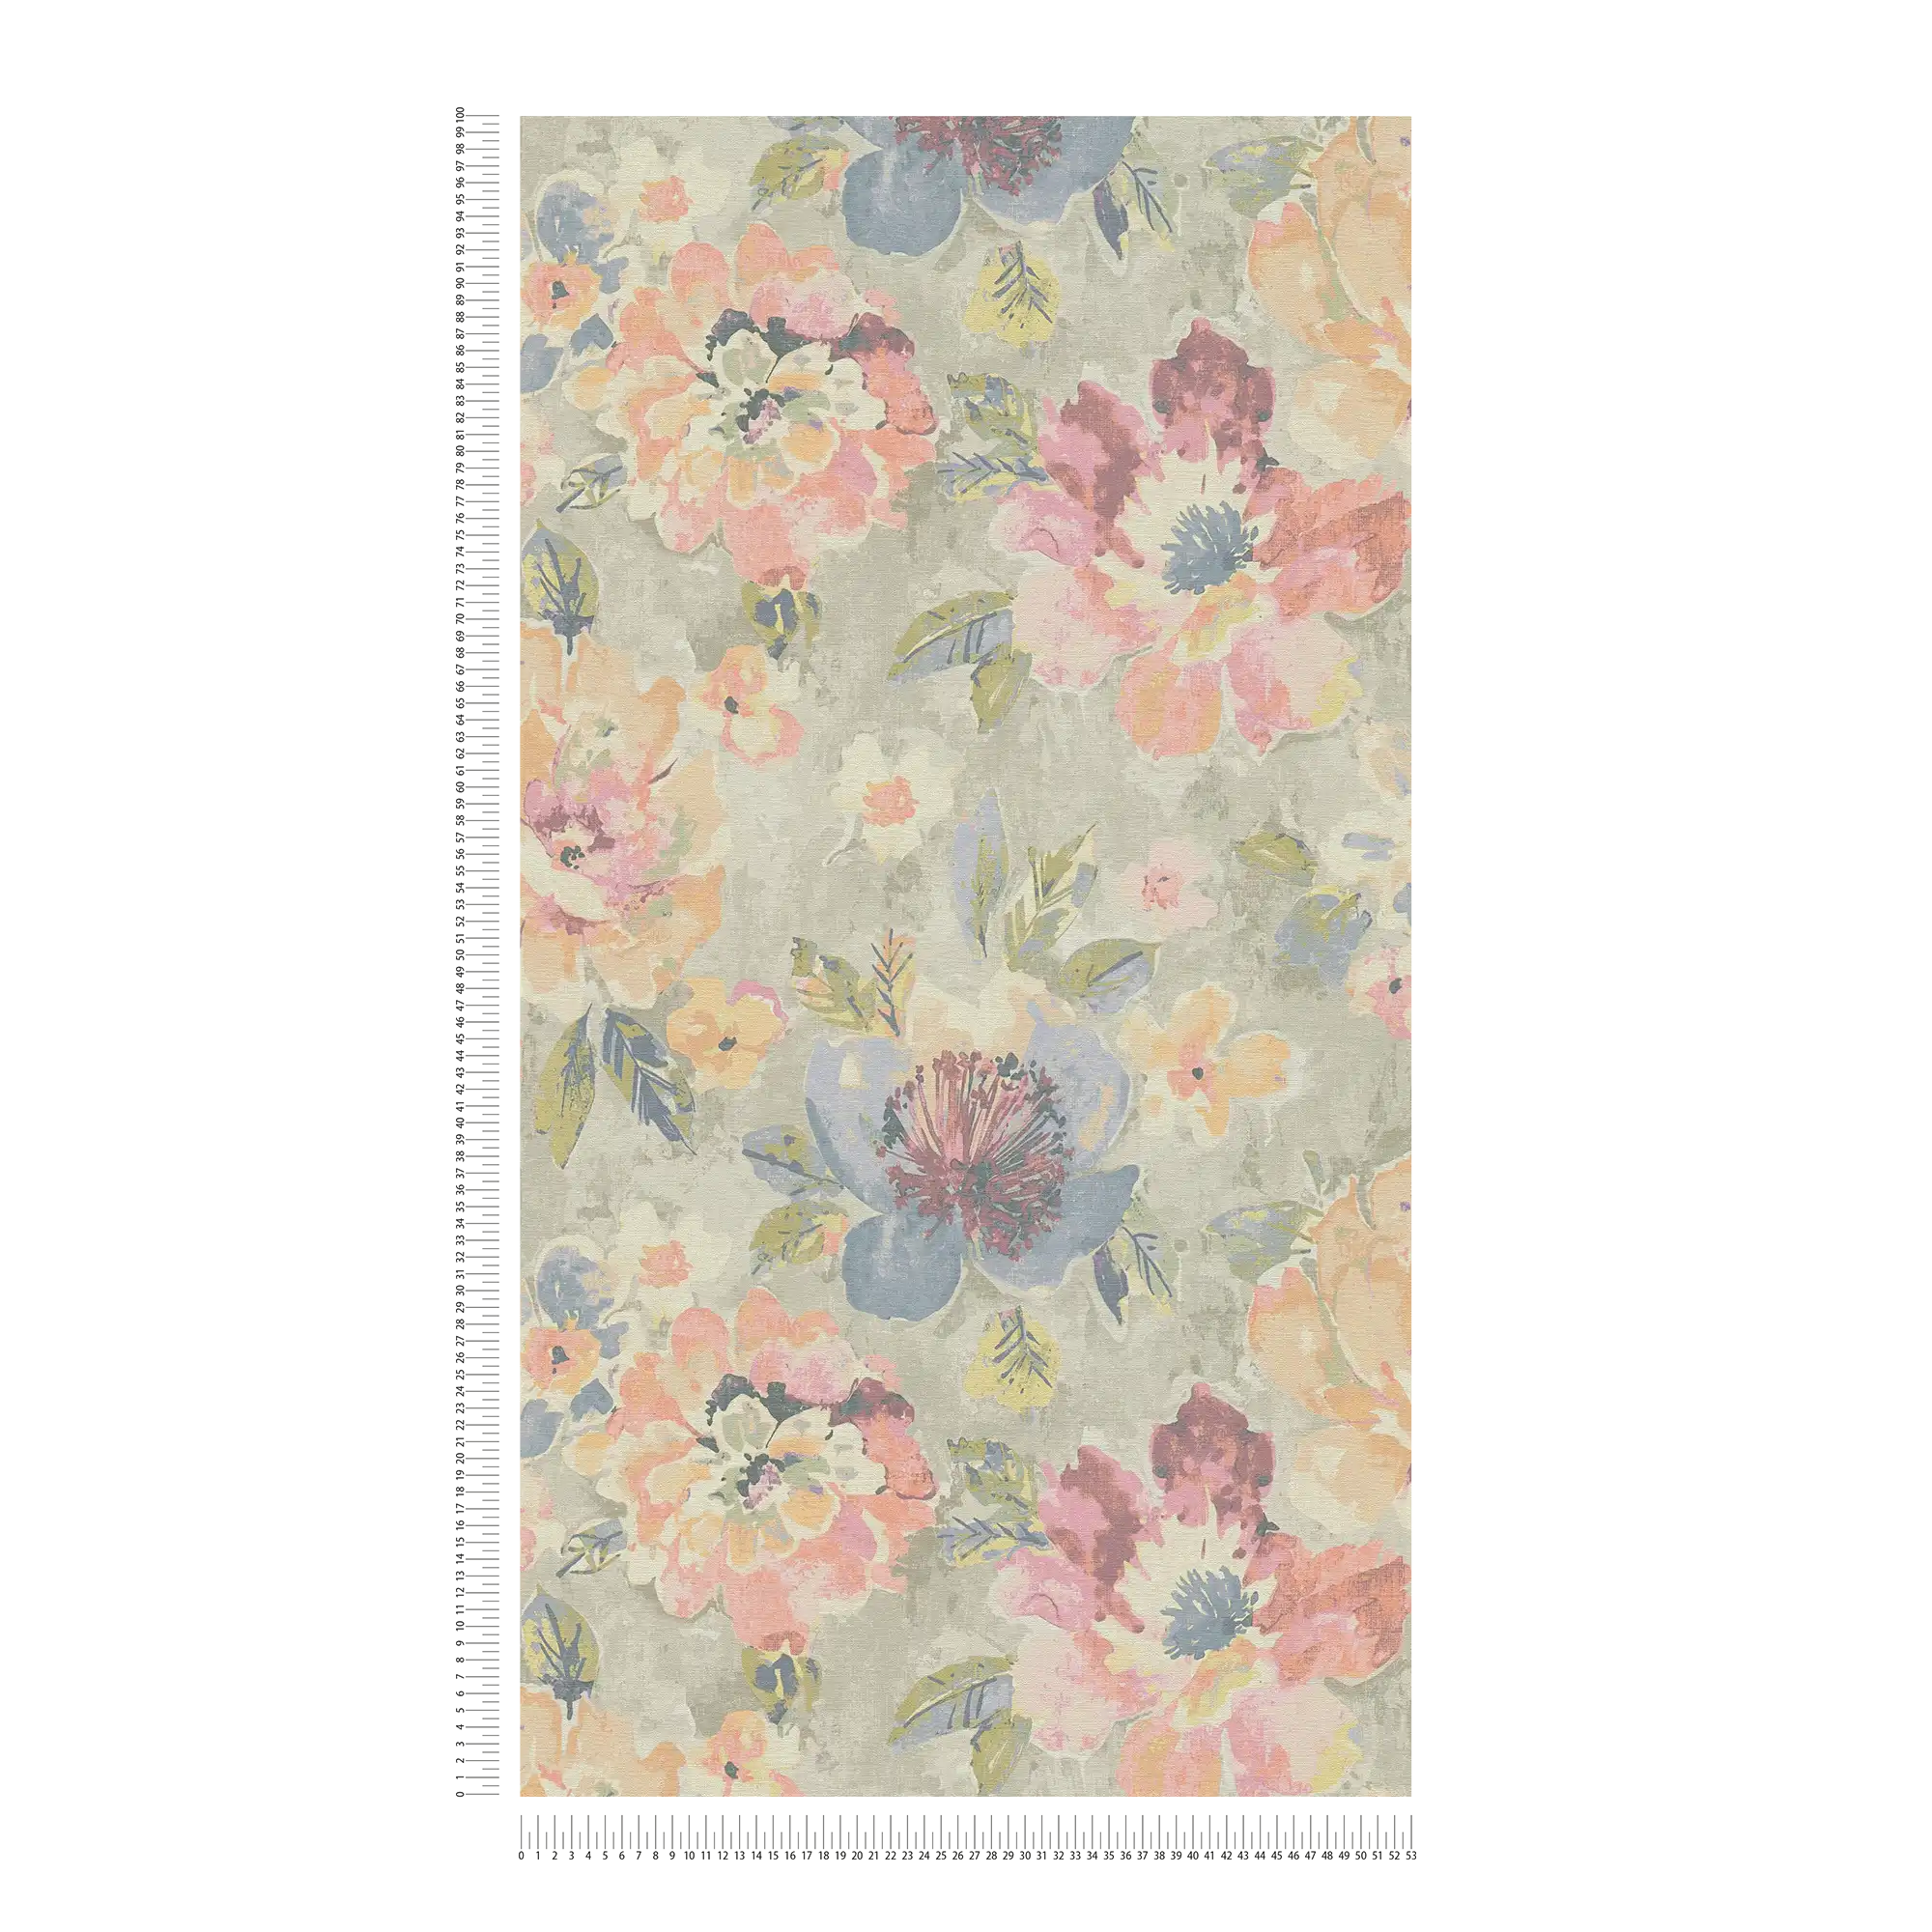             Blumen-Vliestapete im Aquarell- und Vintagelook – Bunt, Grau, Pink
        